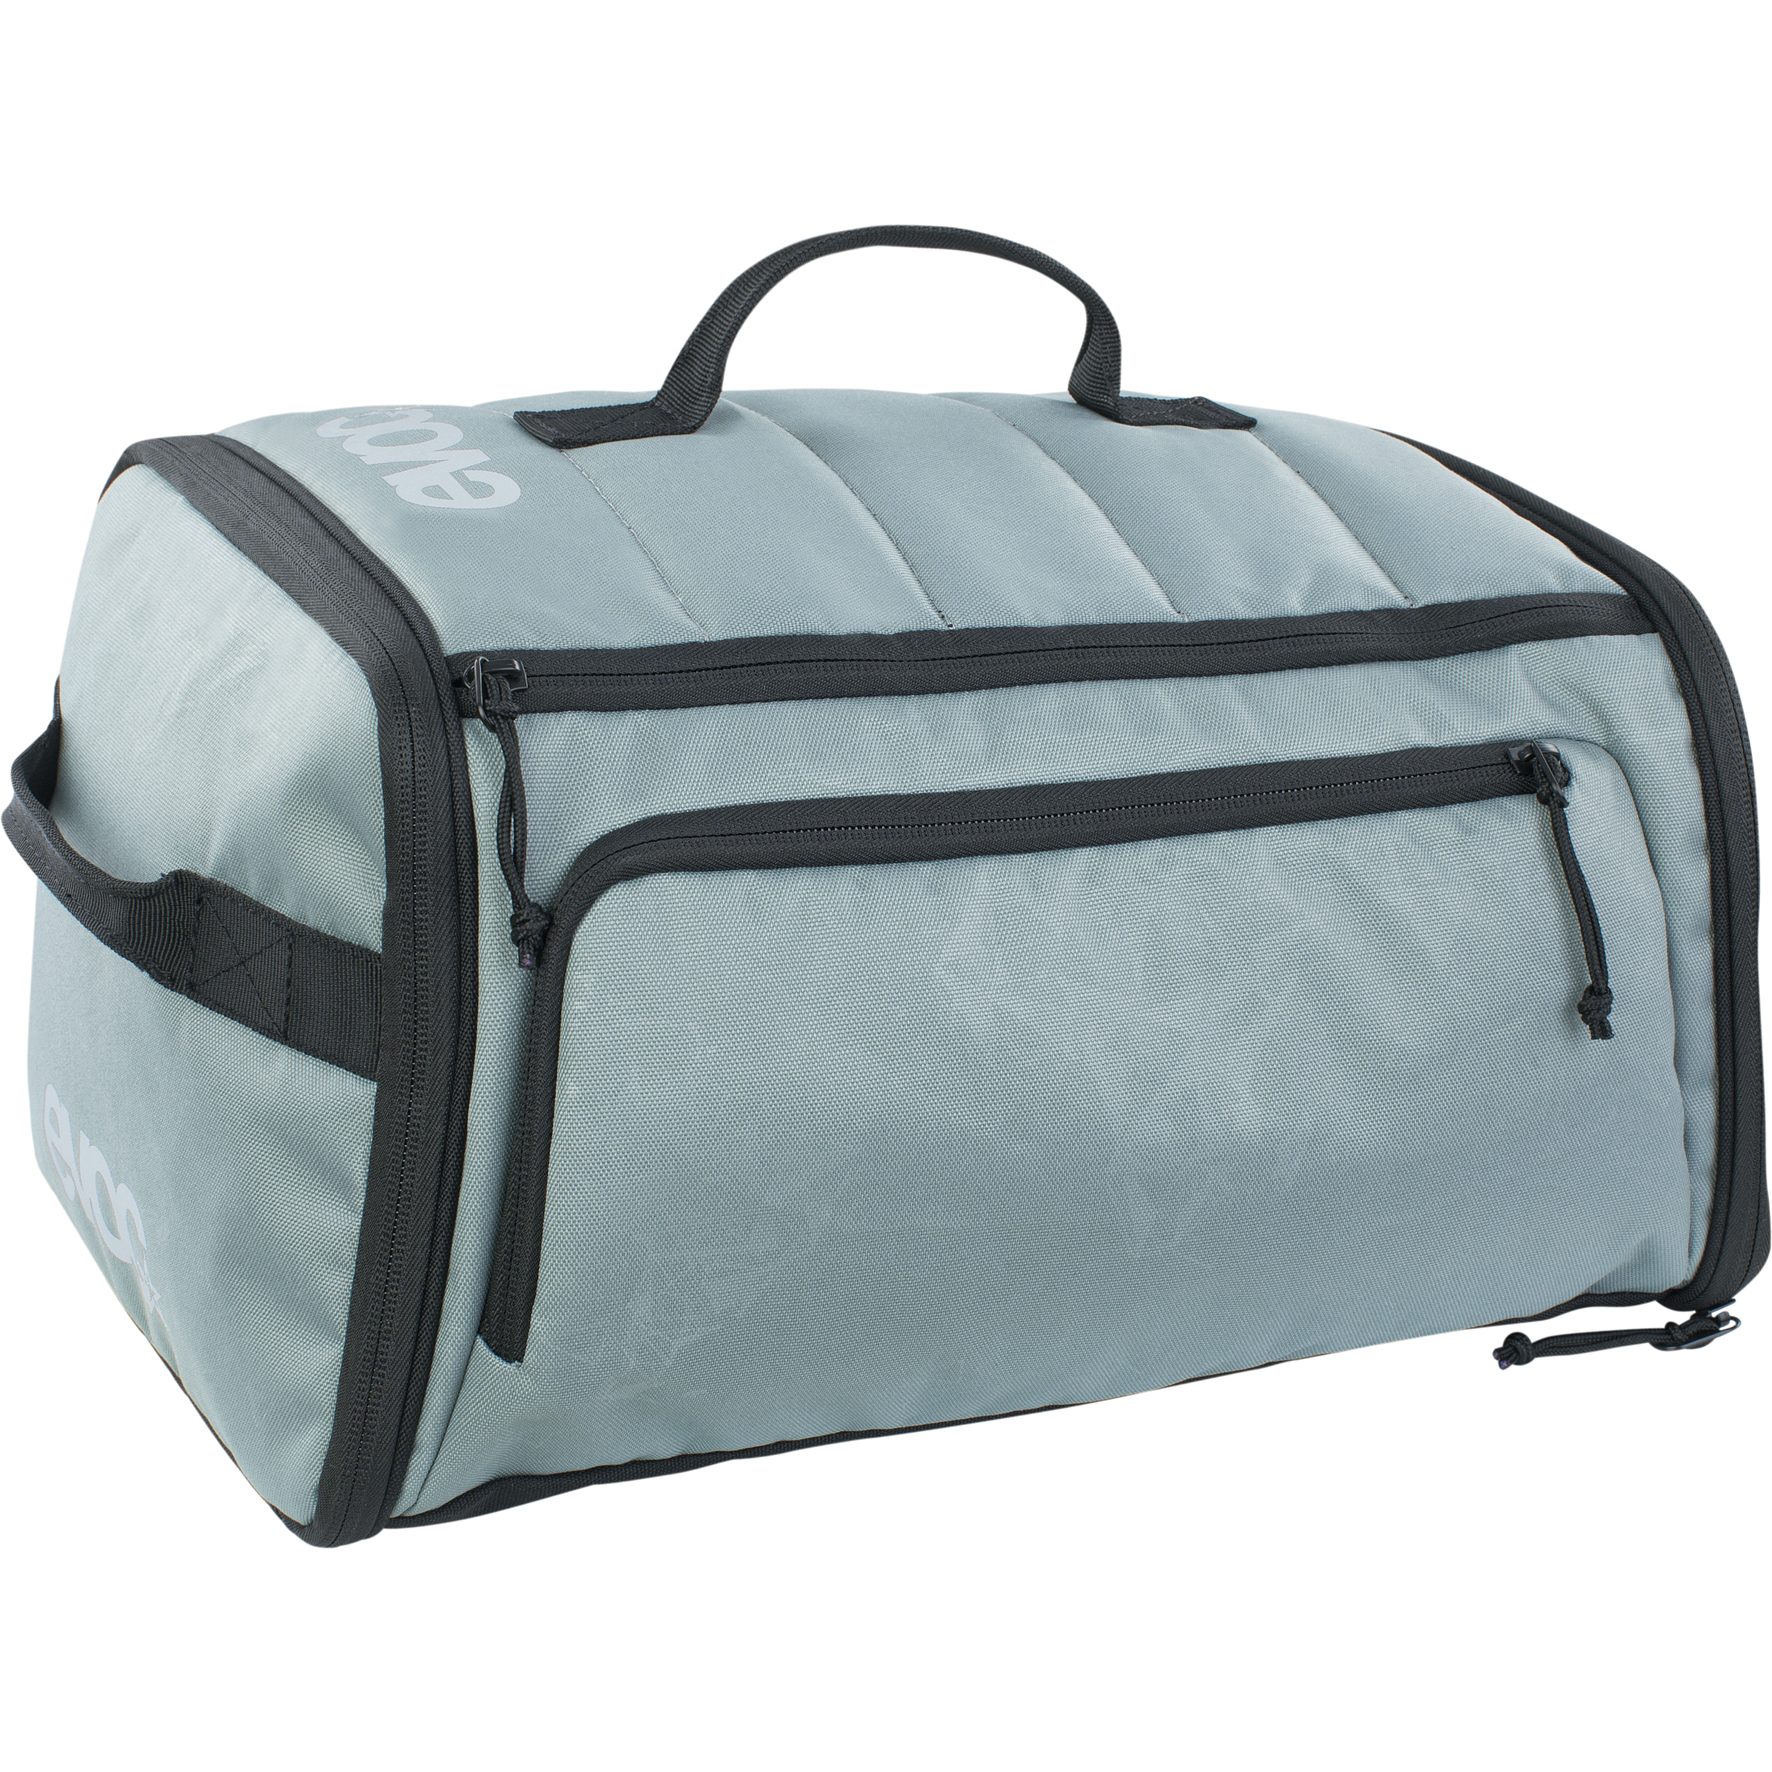 Produktbild von EVOC Gear Bag 15L Reisetasche - Steel